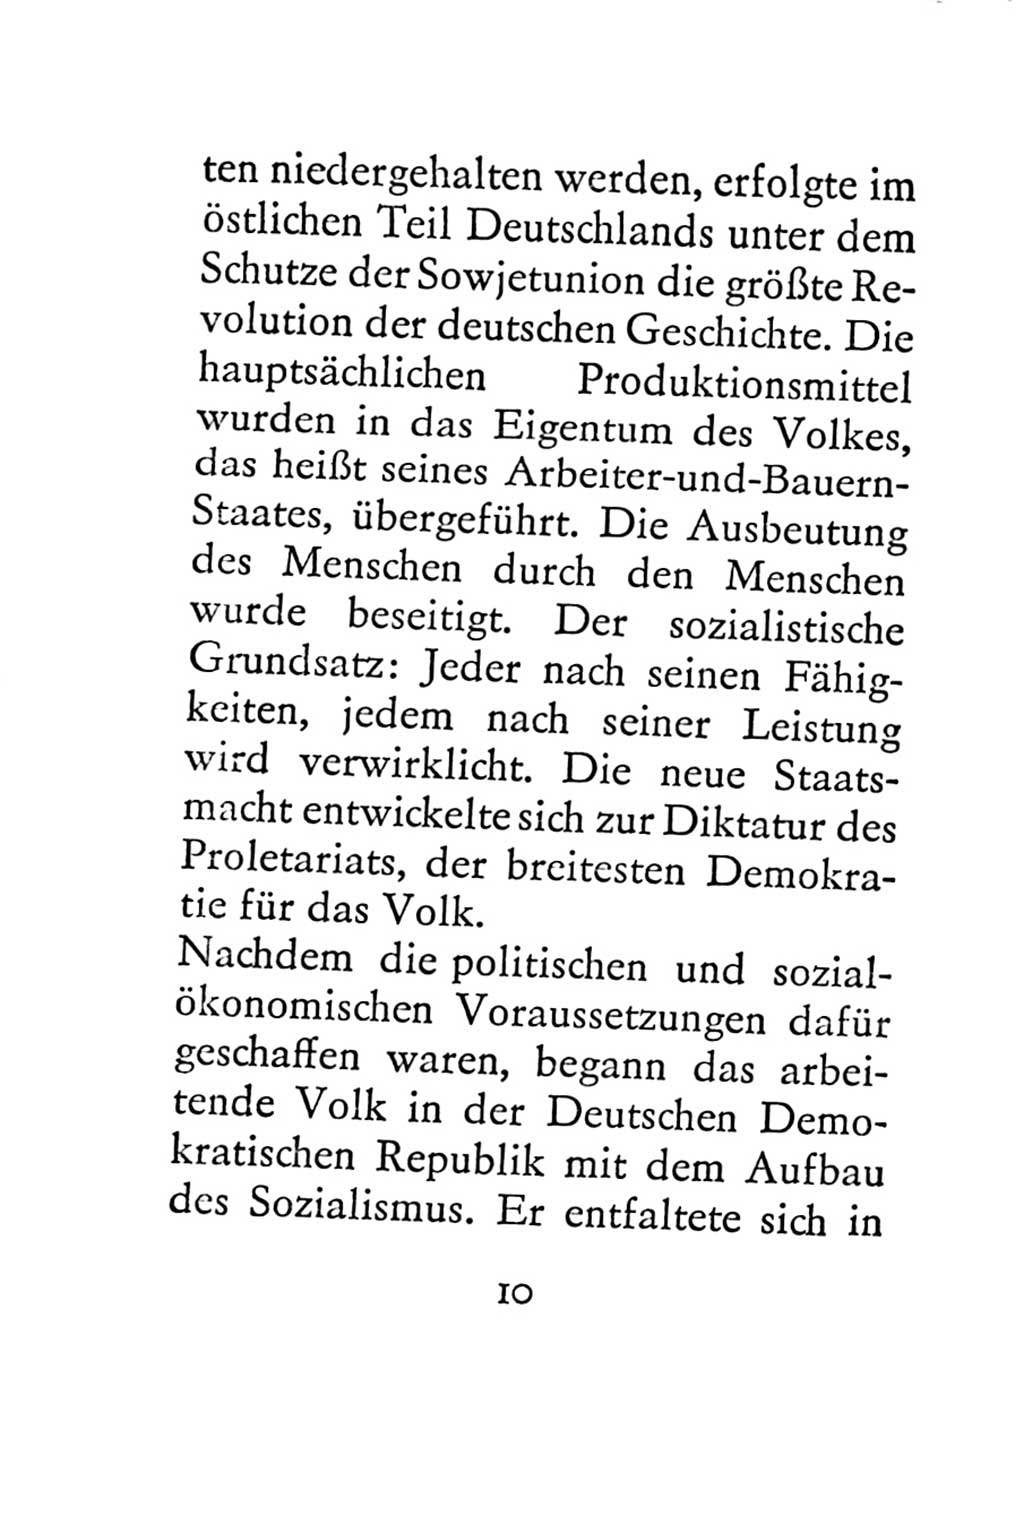 Statut der Sozialistischen Einheitspartei Deutschlands (SED) 1967, Seite 10 (St. SED DDR 1967, S. 10)